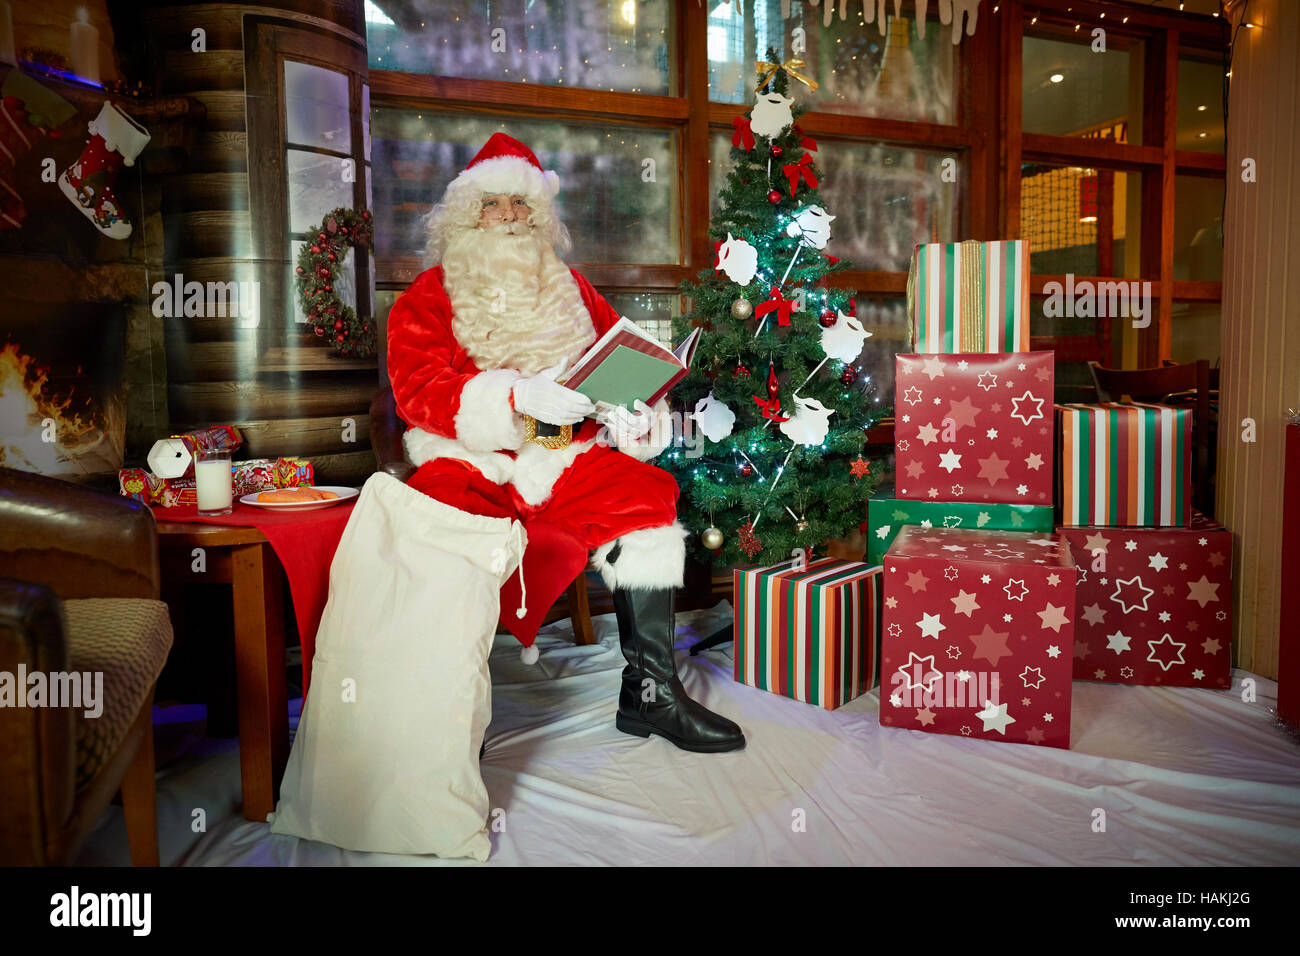 Grotte Santa en affichage de noël arbre de Noël illuminé, présente,cheminée,bas lecture enveloppé doués bon costume rouge sac à pub Santa Cla Banque D'Images